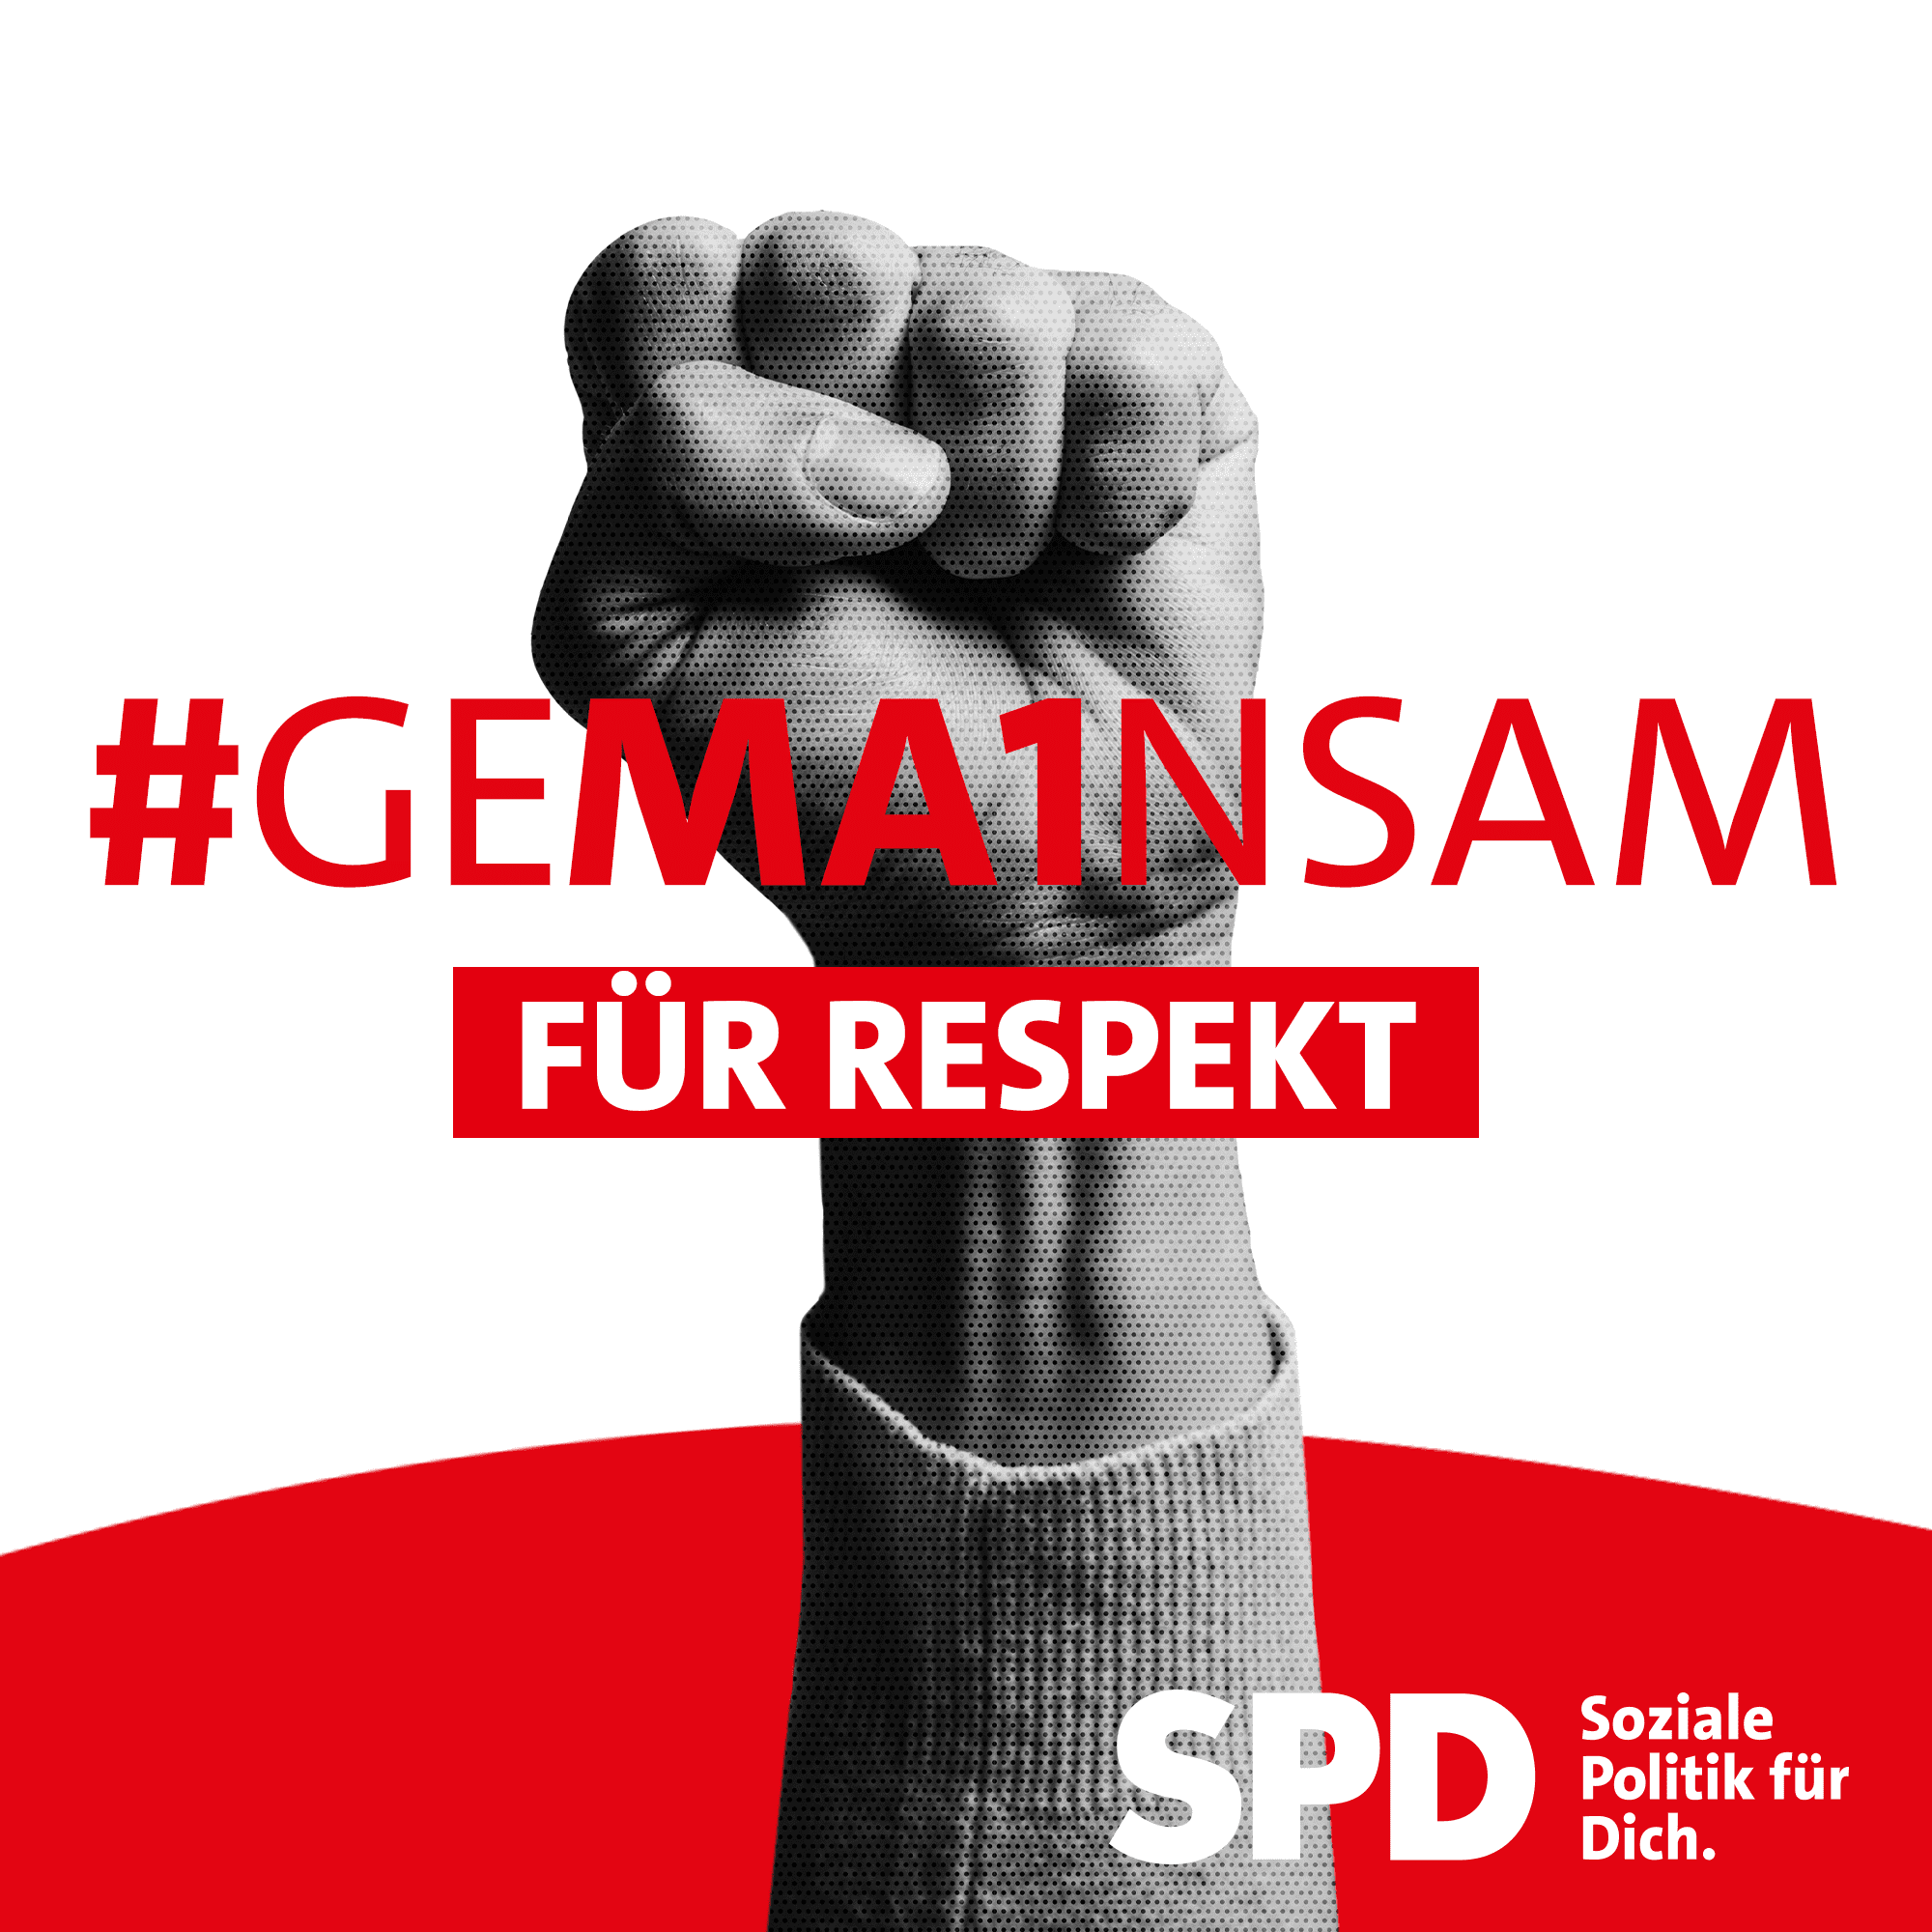 Motiv: #Gema1nsam für Respekt